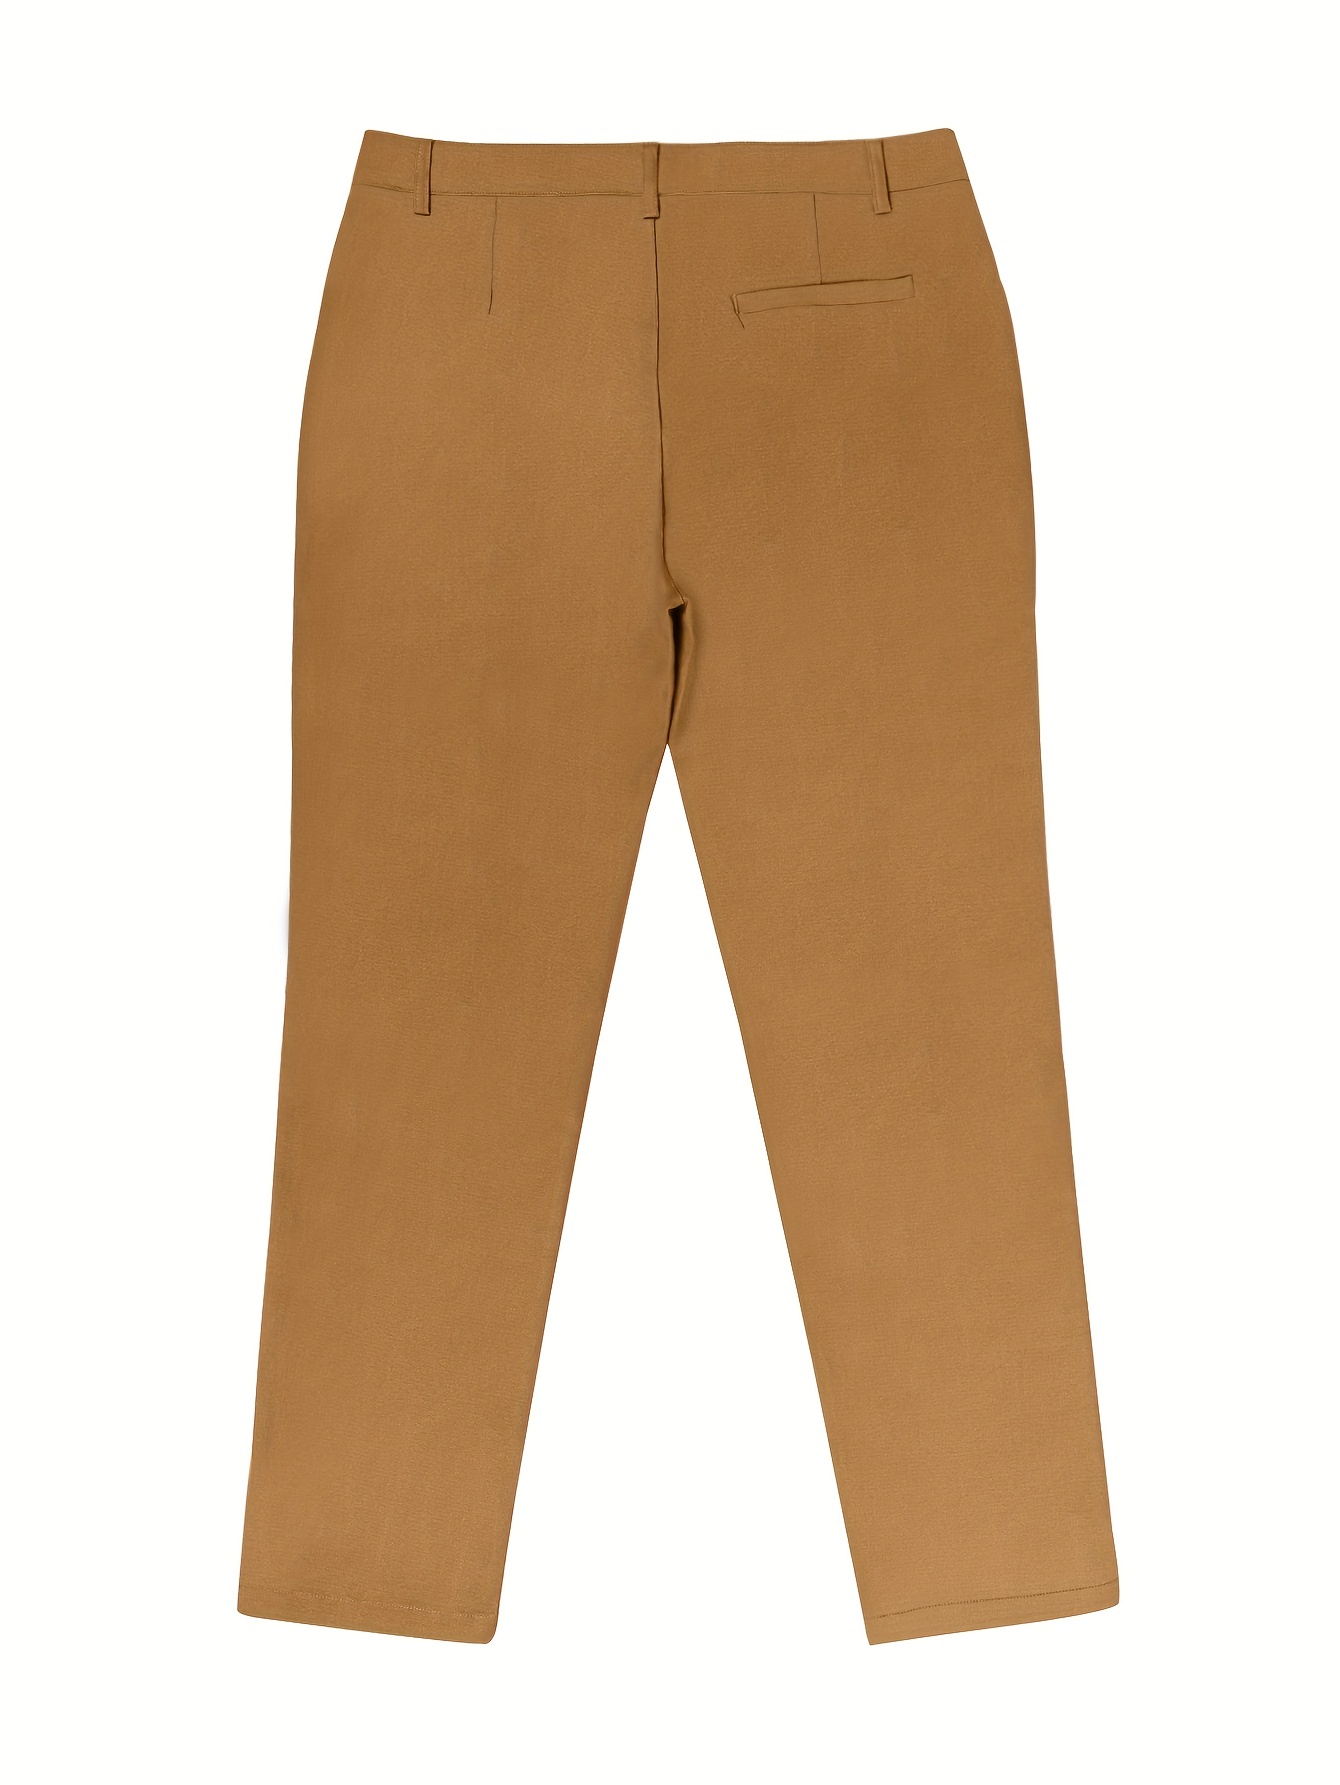 Clásicos pantalones de vestir elegantes y ajustados, pantalones de vestir  de color sólido ligeramente elásticos para hombres, semi-formales, para las